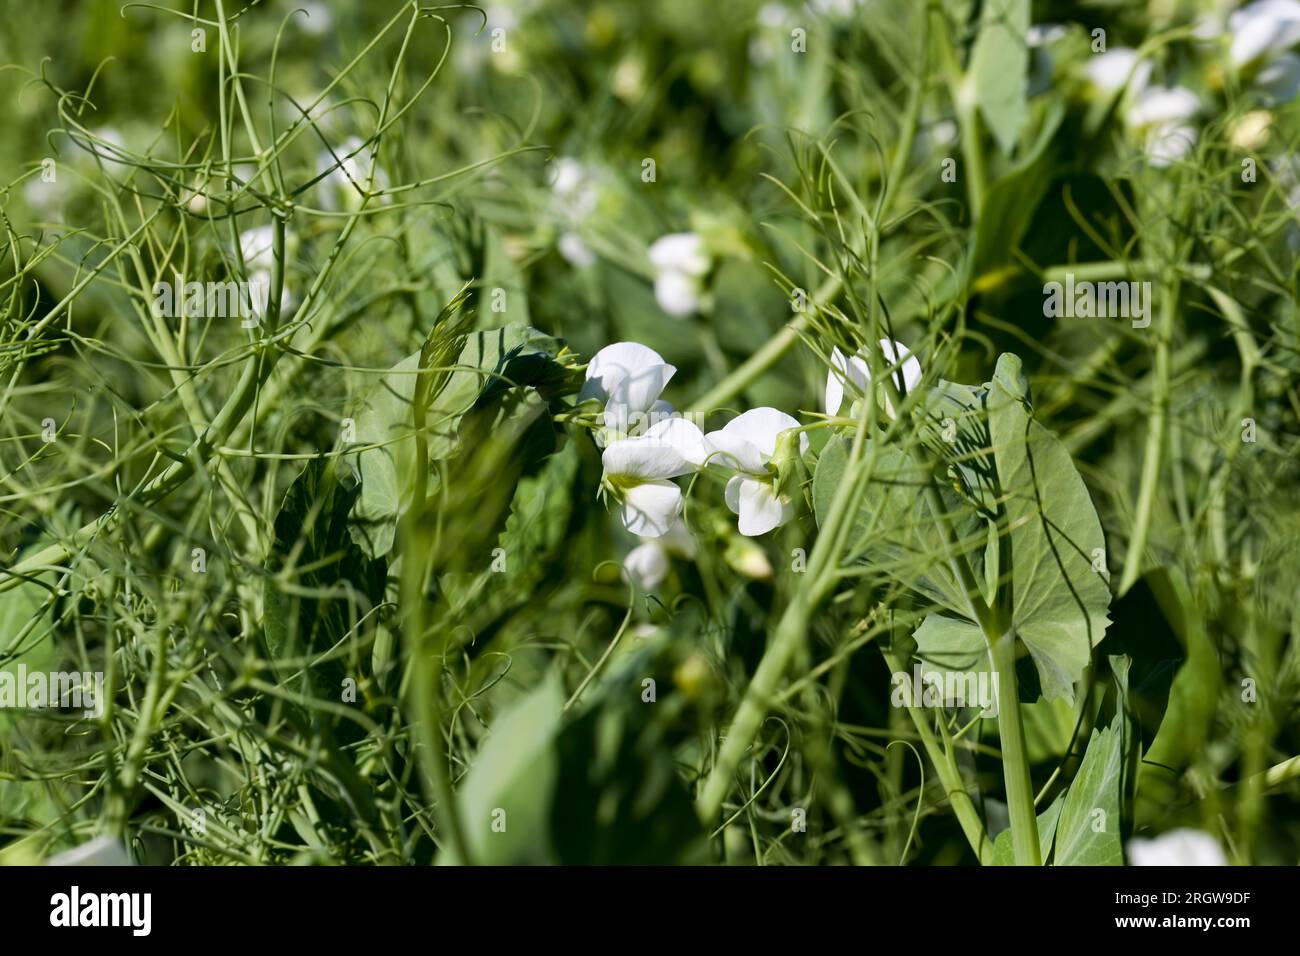 un campo agricolo dove crescono i piselli verdi, i piselli fioriscono con fiori bianchi nella stagione estiva Foto Stock